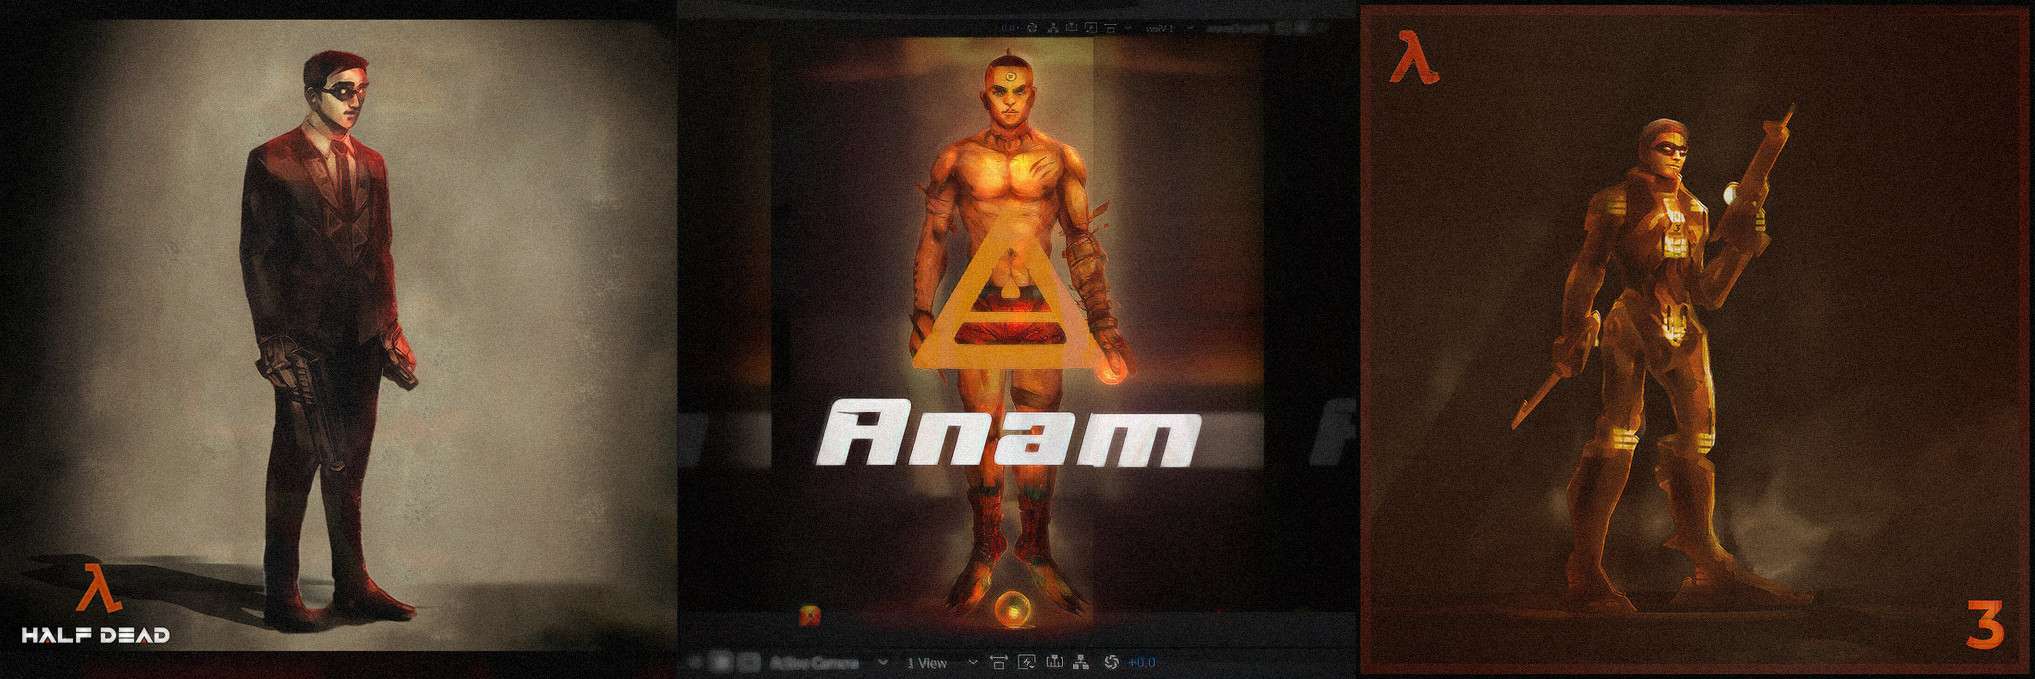 ANAM 3D
https://pixelgem.art/projects/8evd9E